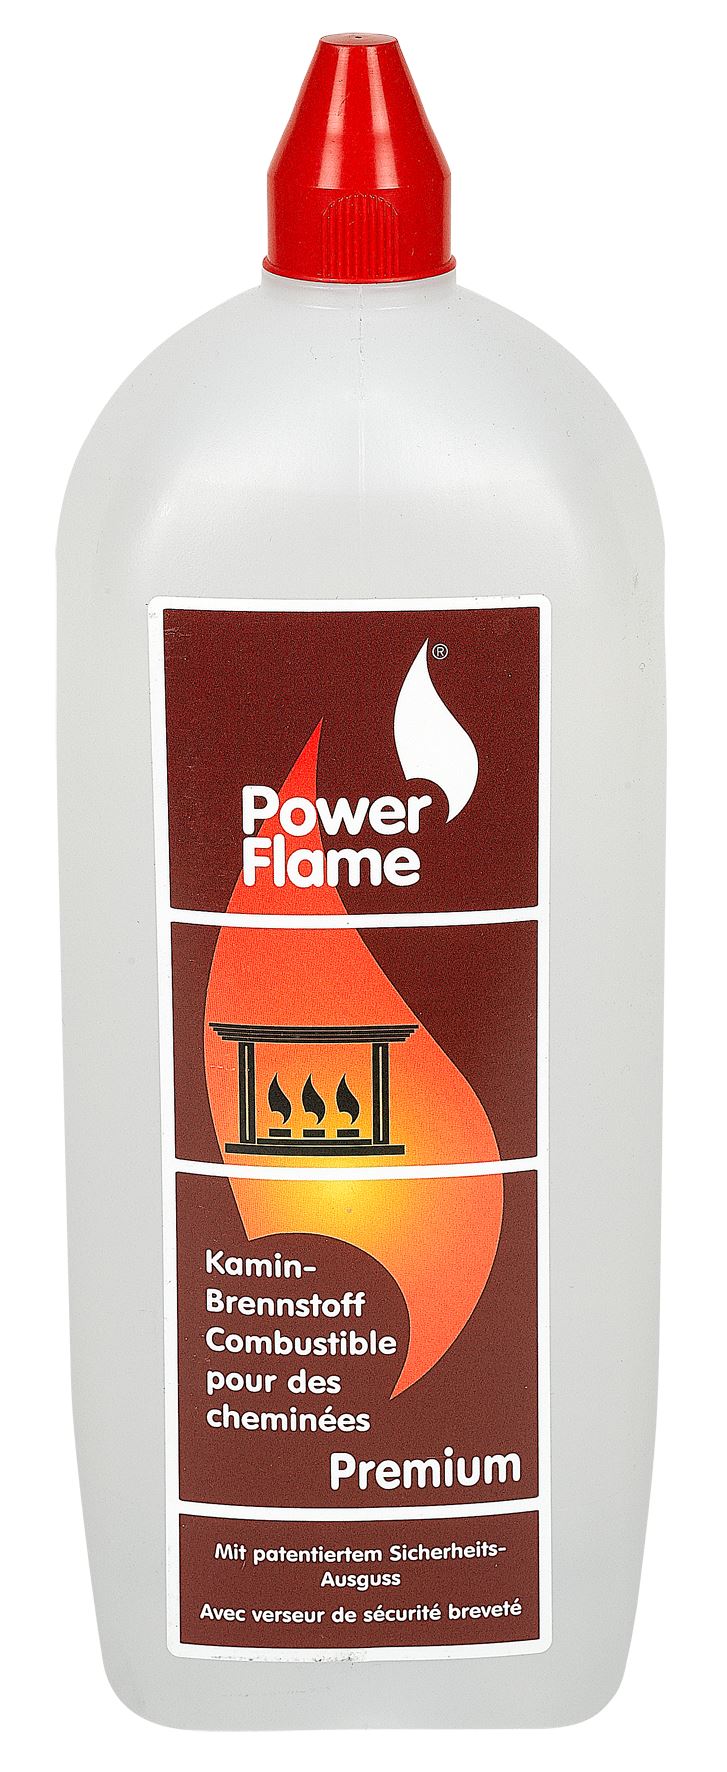 PowerFlame Bio-ethanol Premium 3L - Alcool à brûler pour cheminées